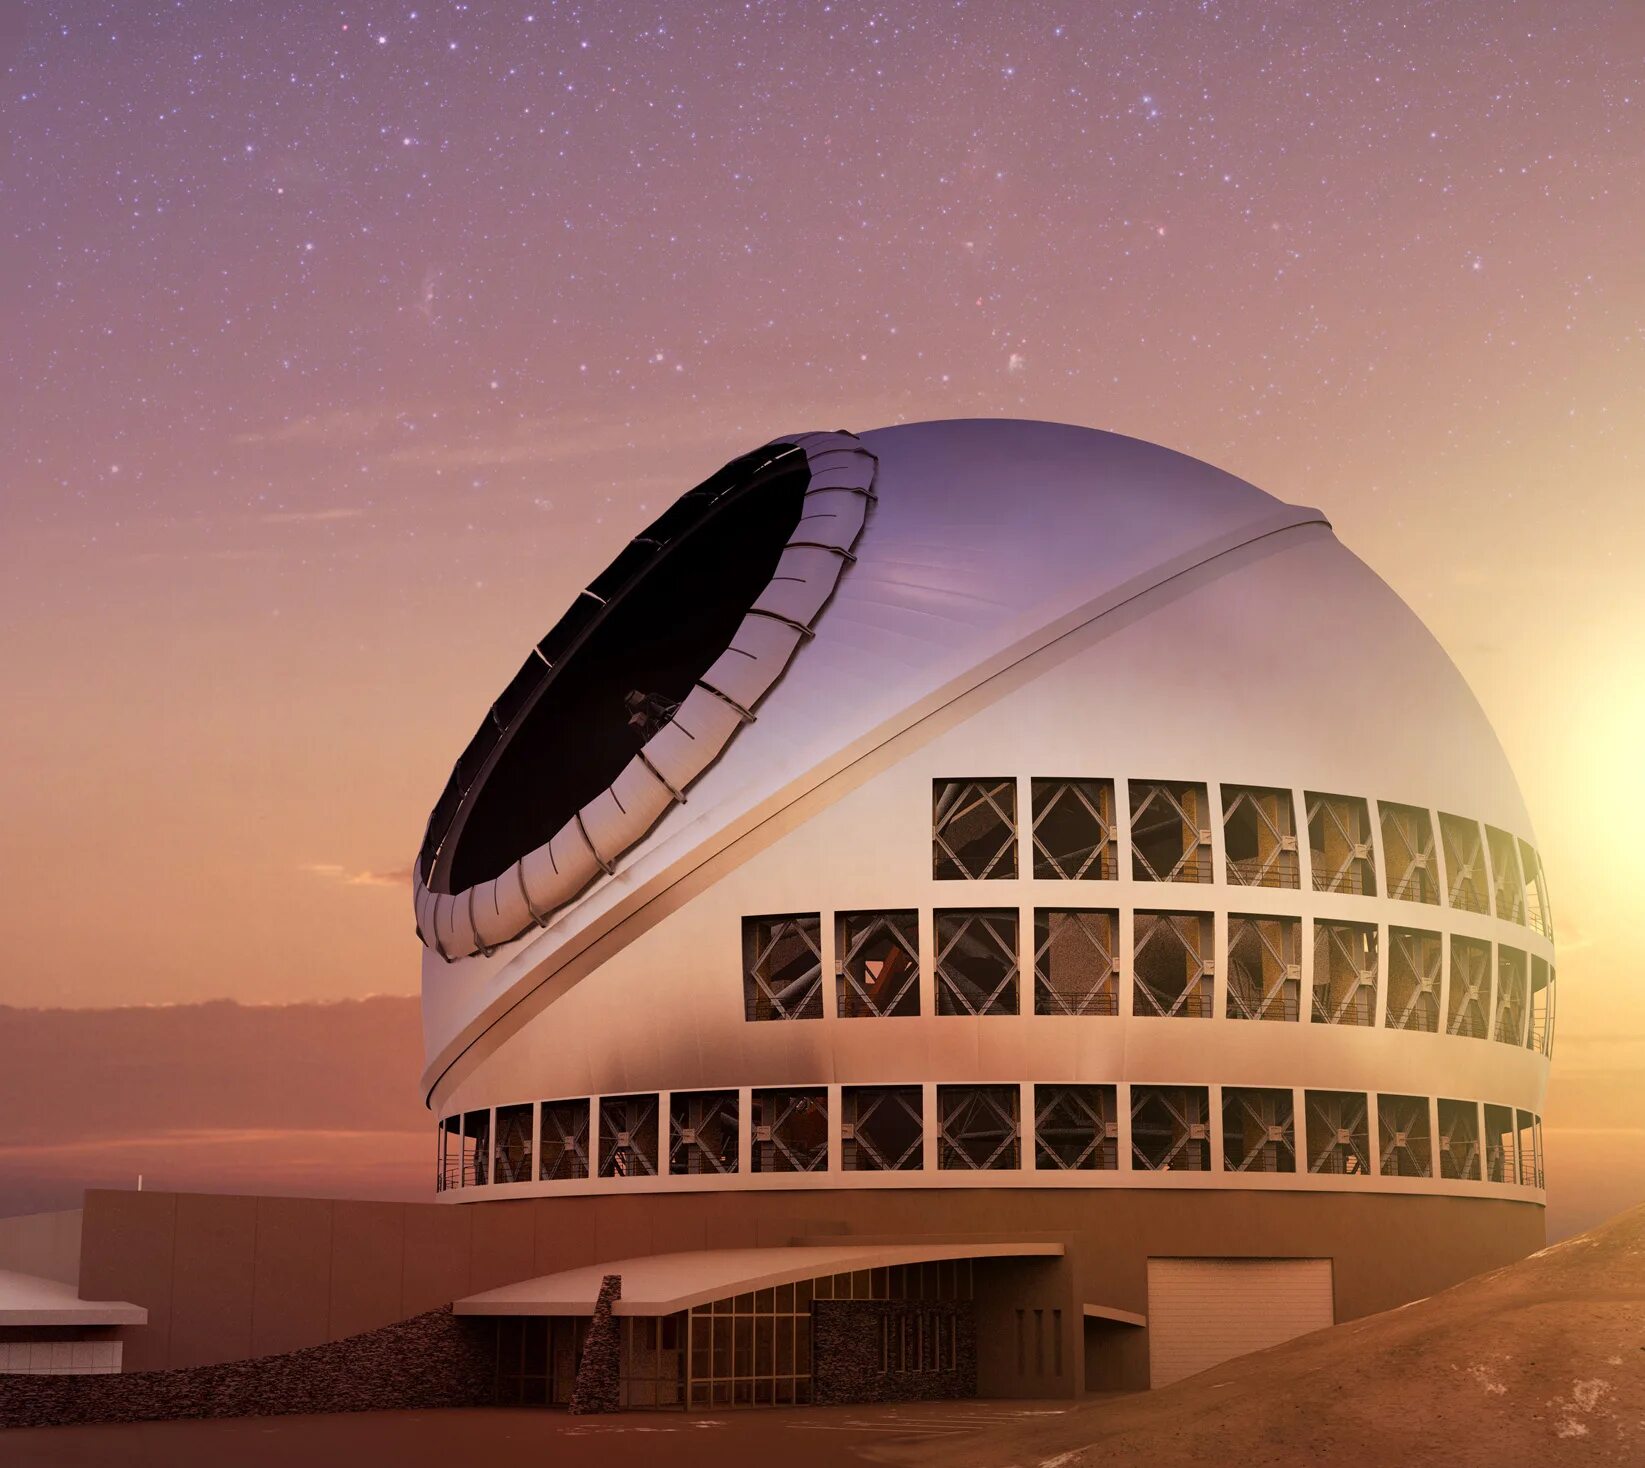 Самый большой телескоп в мире находится. Телескоп ТМТ. Тридцатиметровый телескоп. Самый мощный телескоп в мире. Телескоп хобби — Эберли (Hobby–Eberly Telescope).